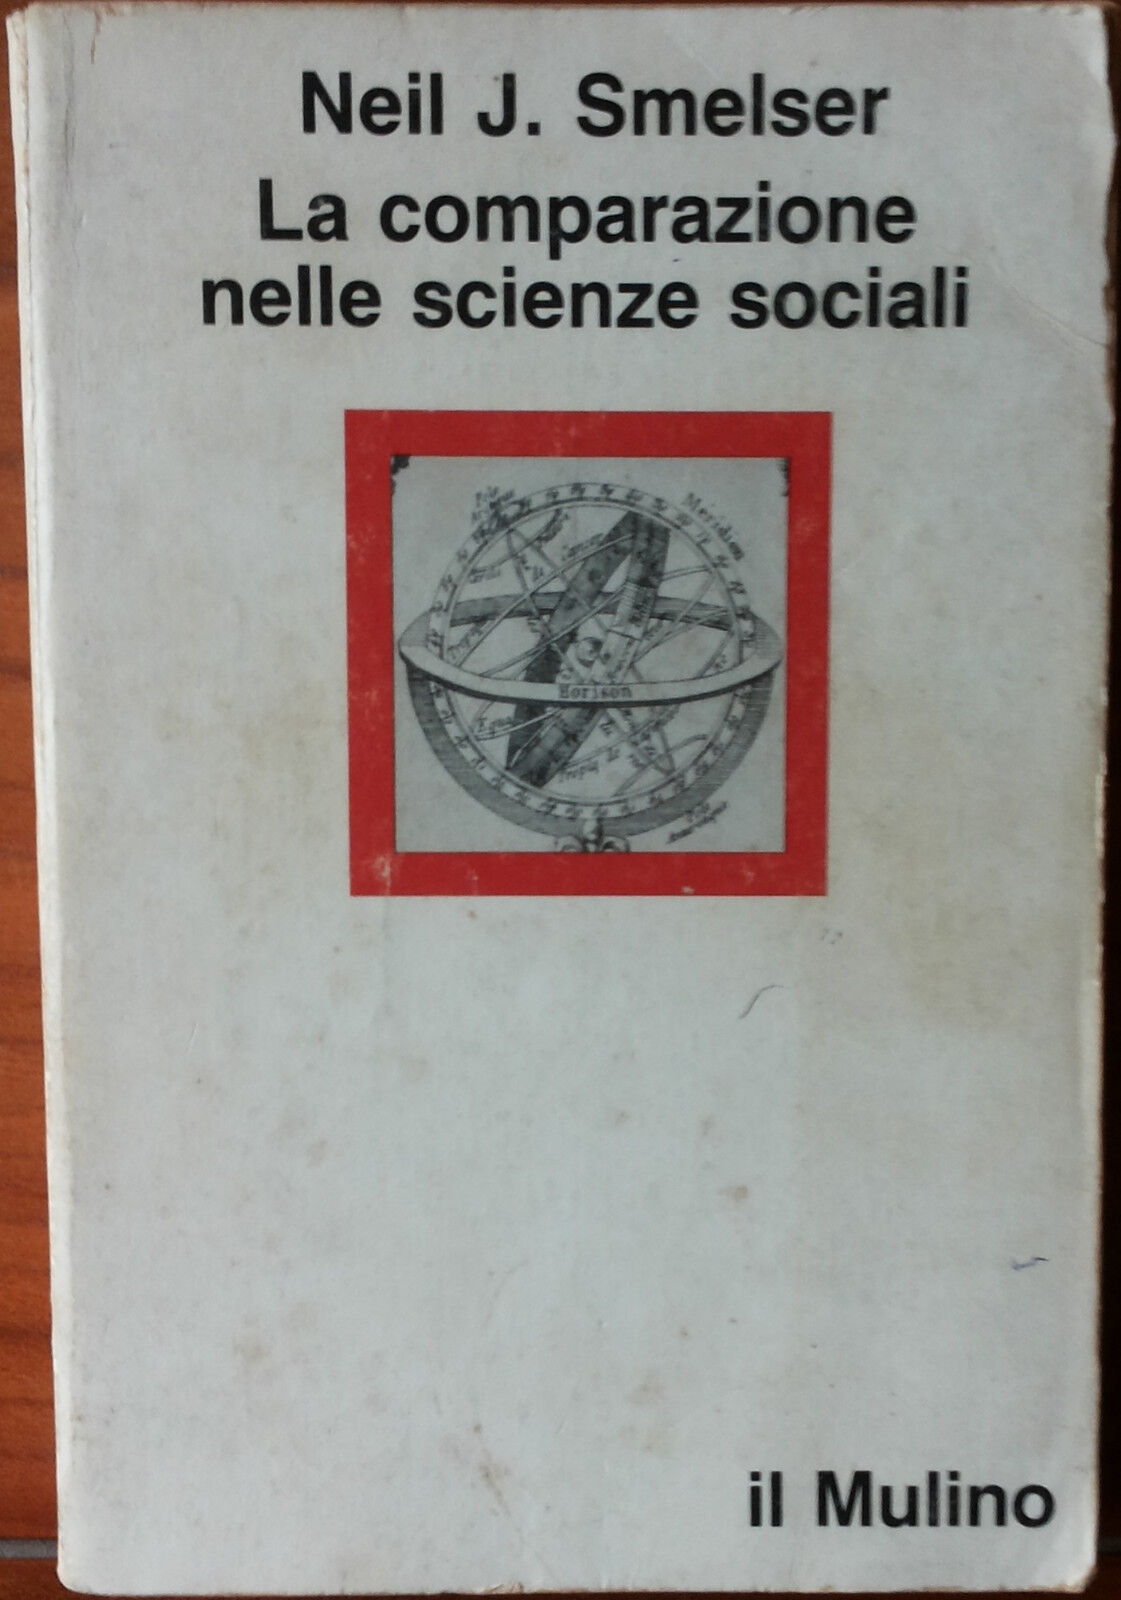 La comparazione nelle scienze sociali - Neil J. Smelser - Il Mulino,1982 - R